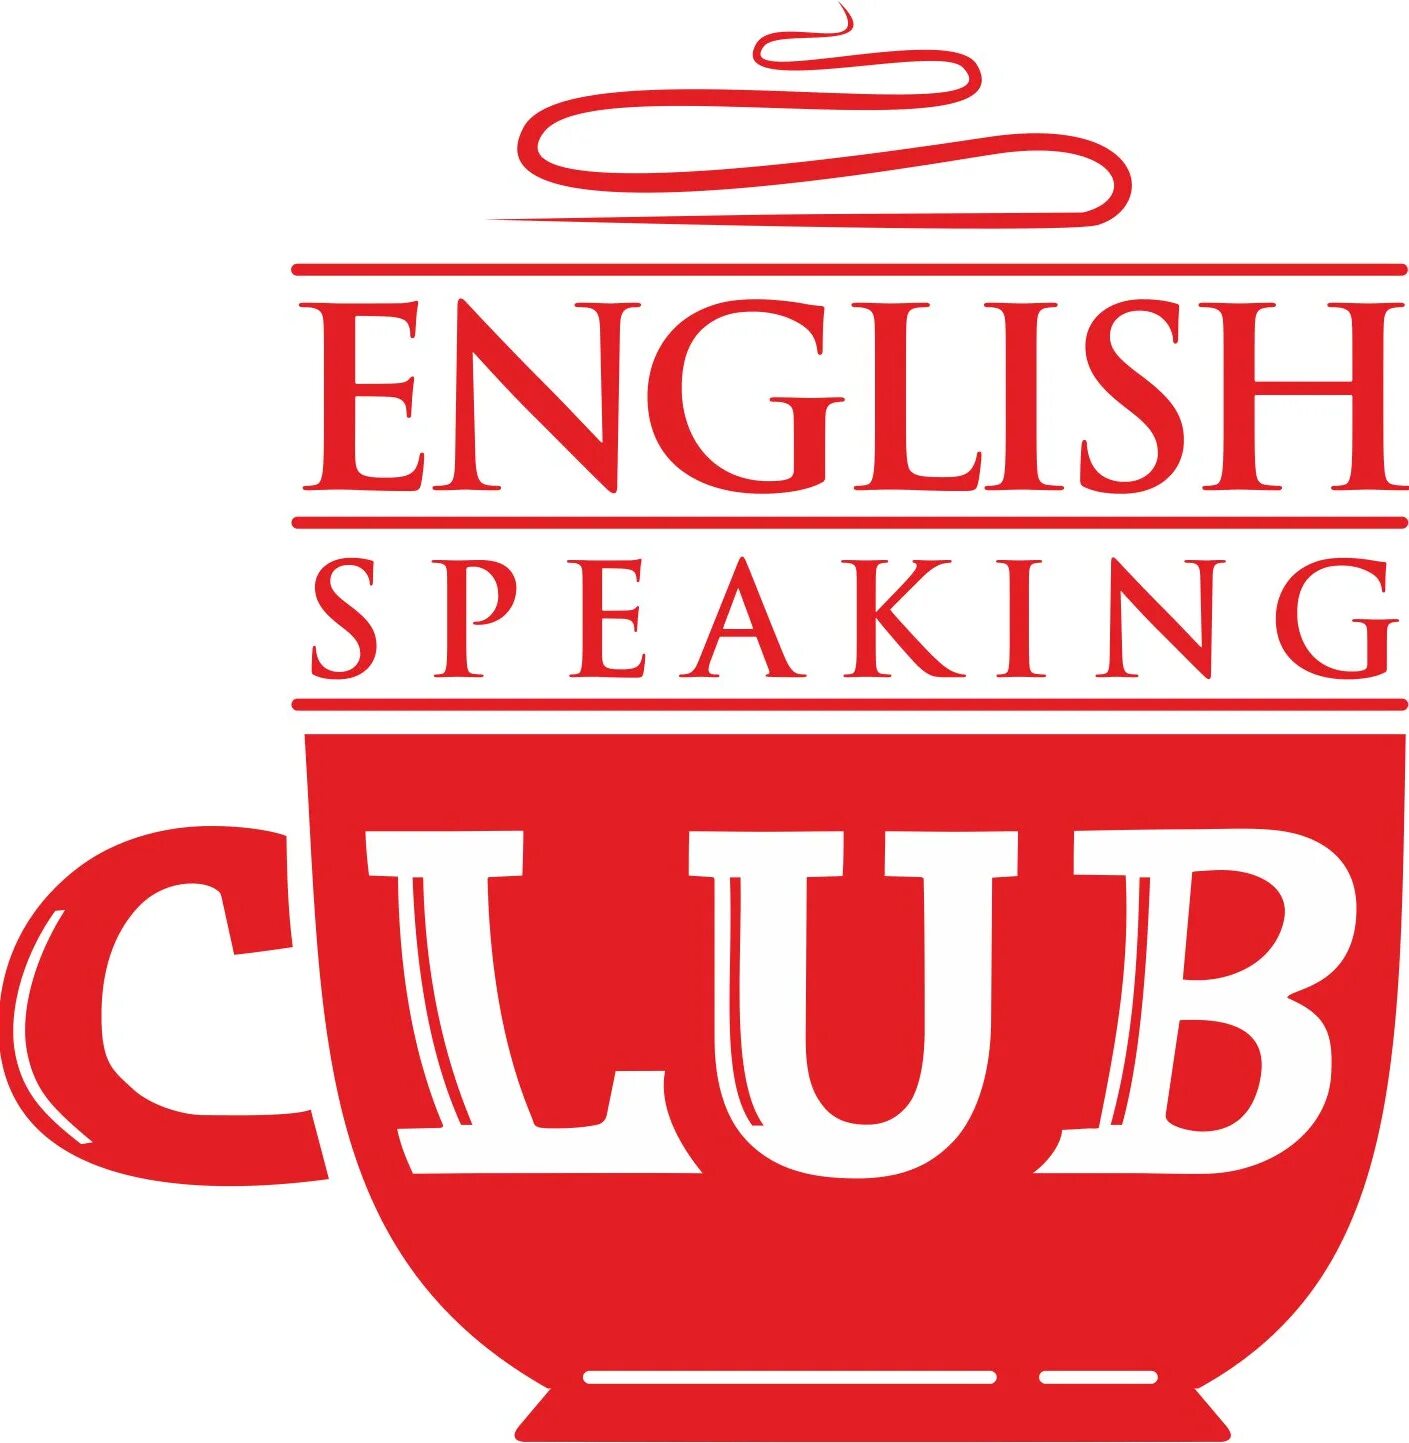 English speaking Club. Разговорный клуб. Разговорный клуб английского языка. Эмблемы английских клубов.